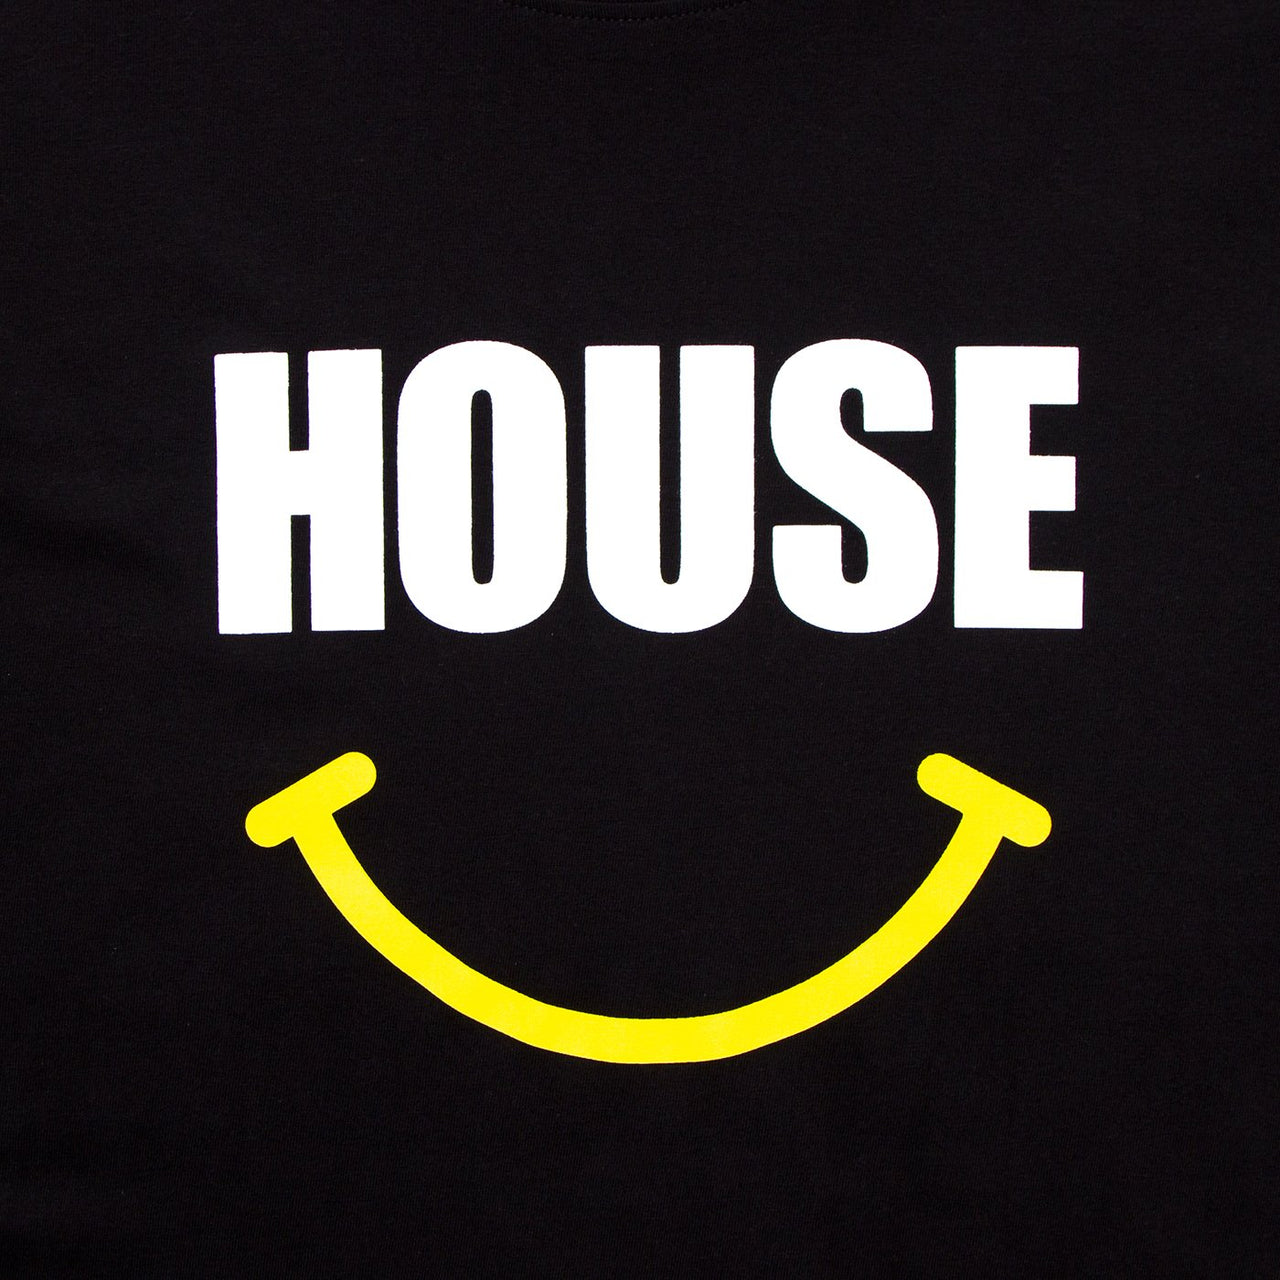 House Acid - Tshirt - Black